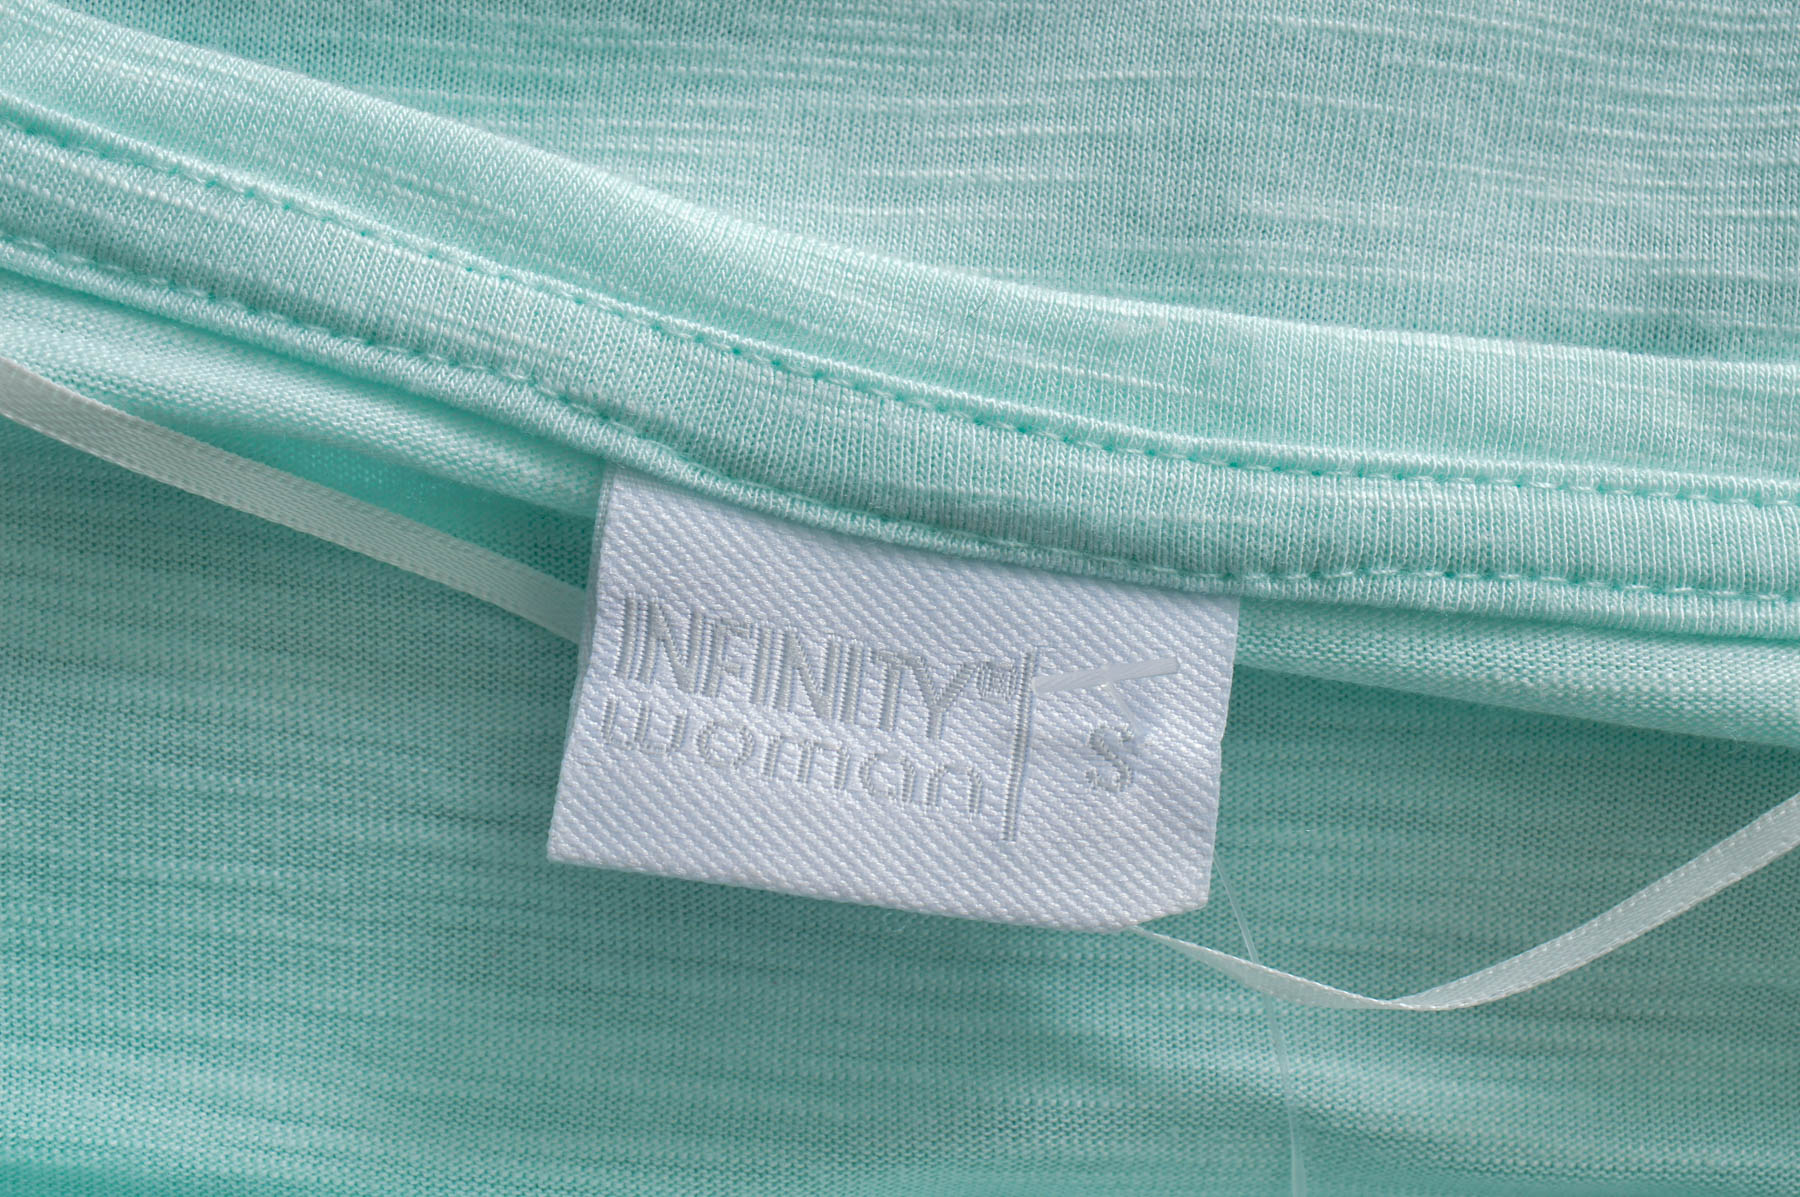 Women's t-shirt - Infinity Woman - 2